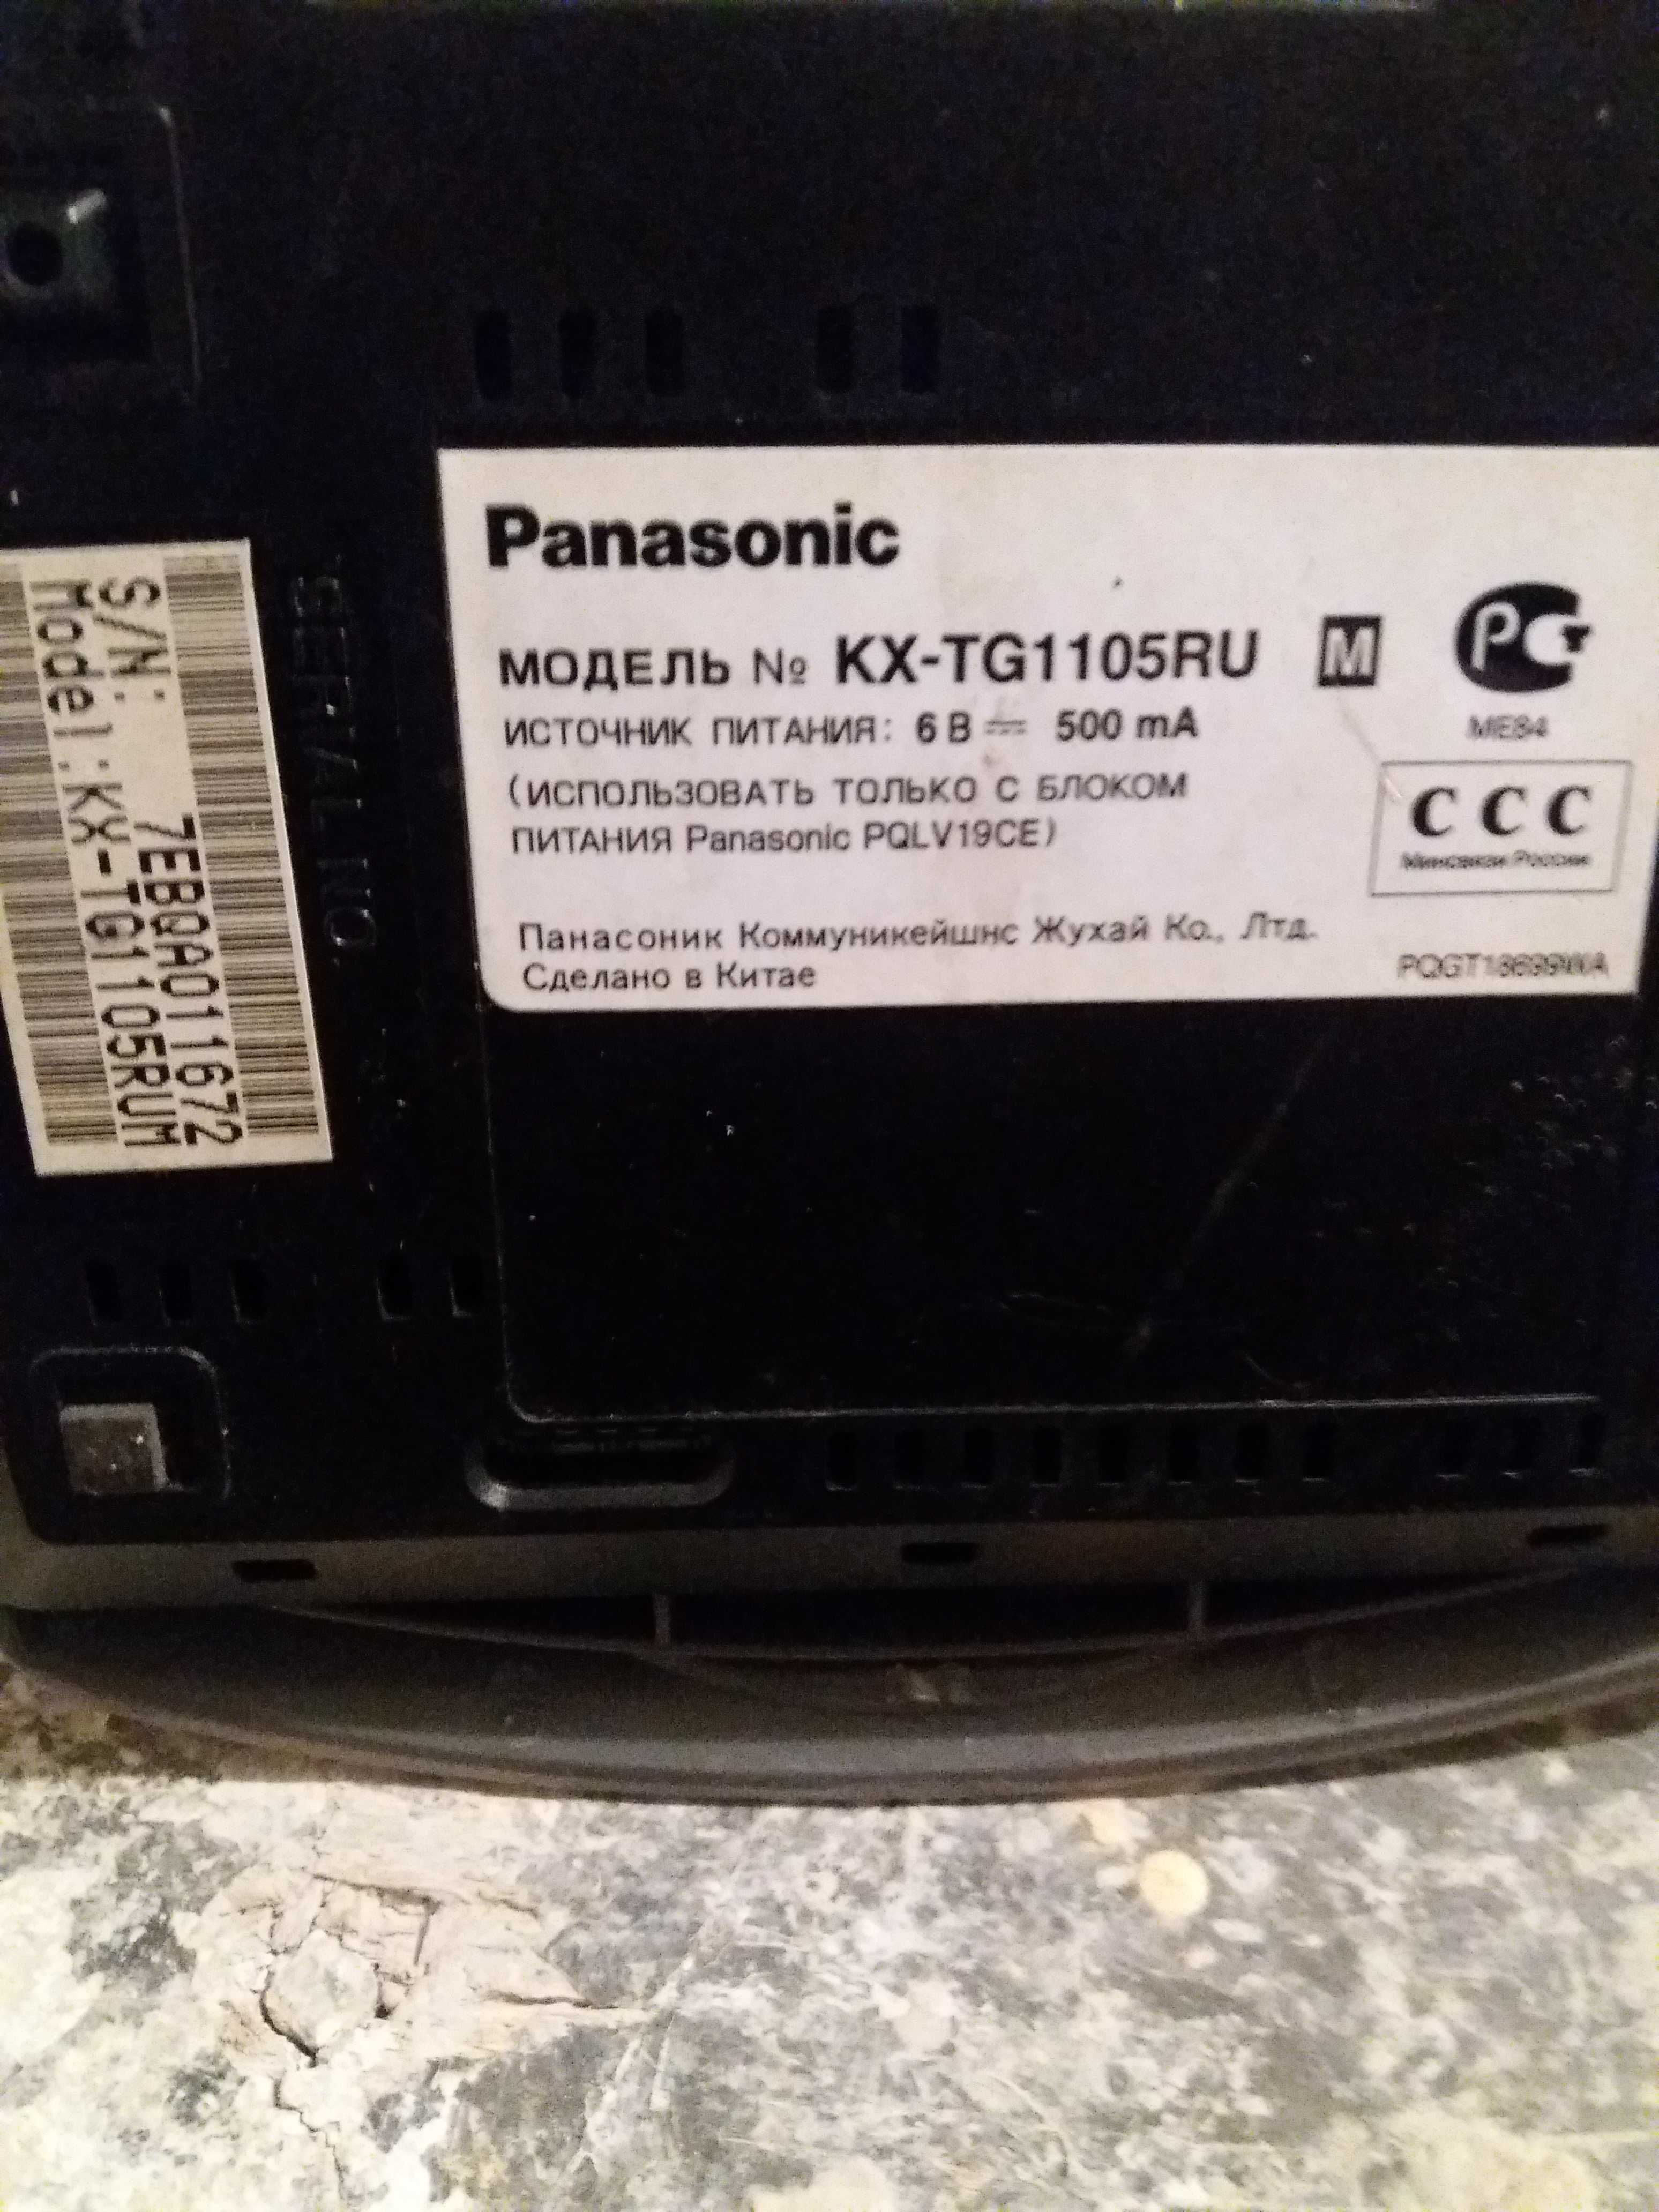 Panasonic KX-TG1105RU